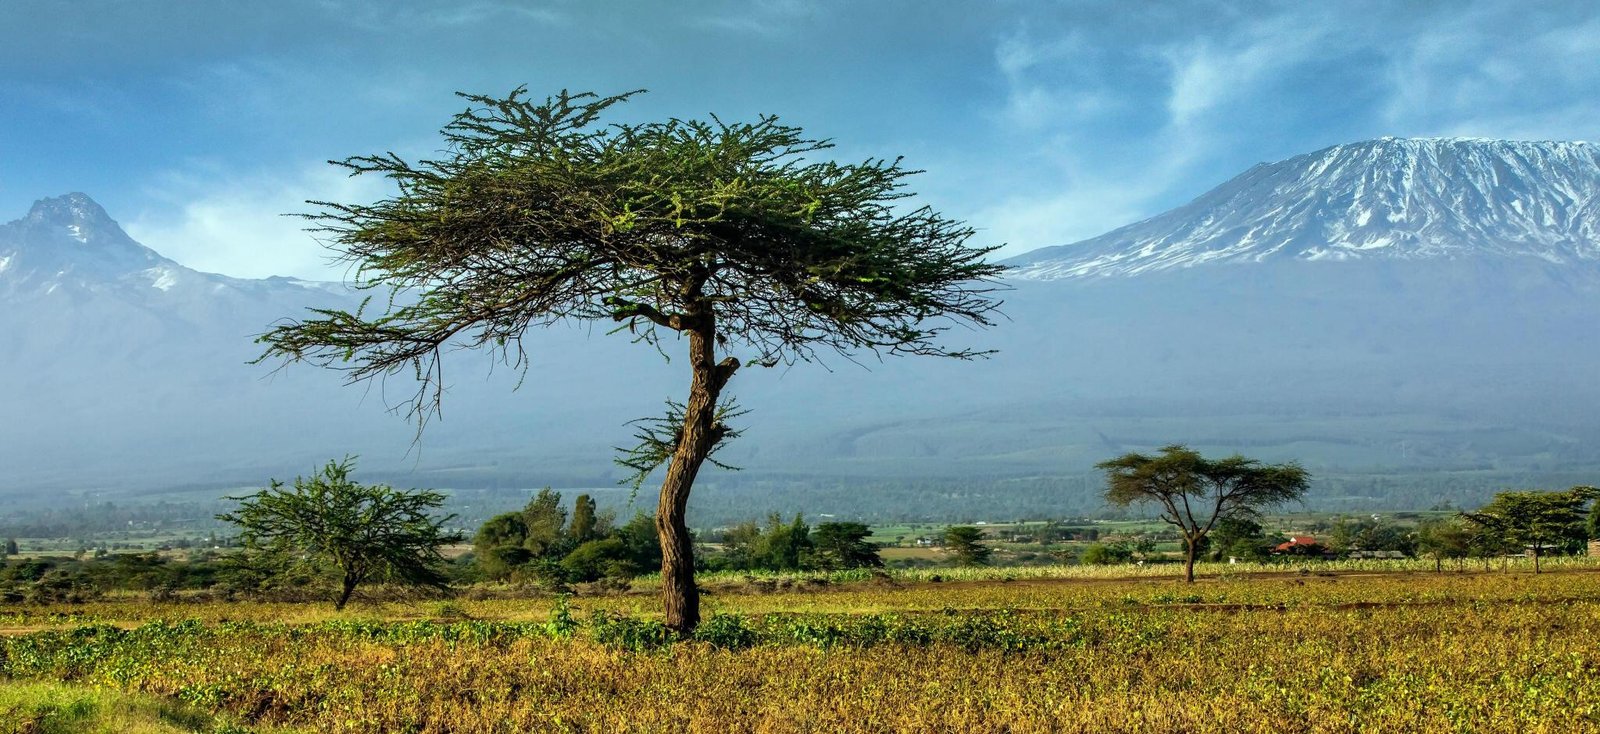 The Best Ultimate 7 days Lemosho route Kilimanjaro